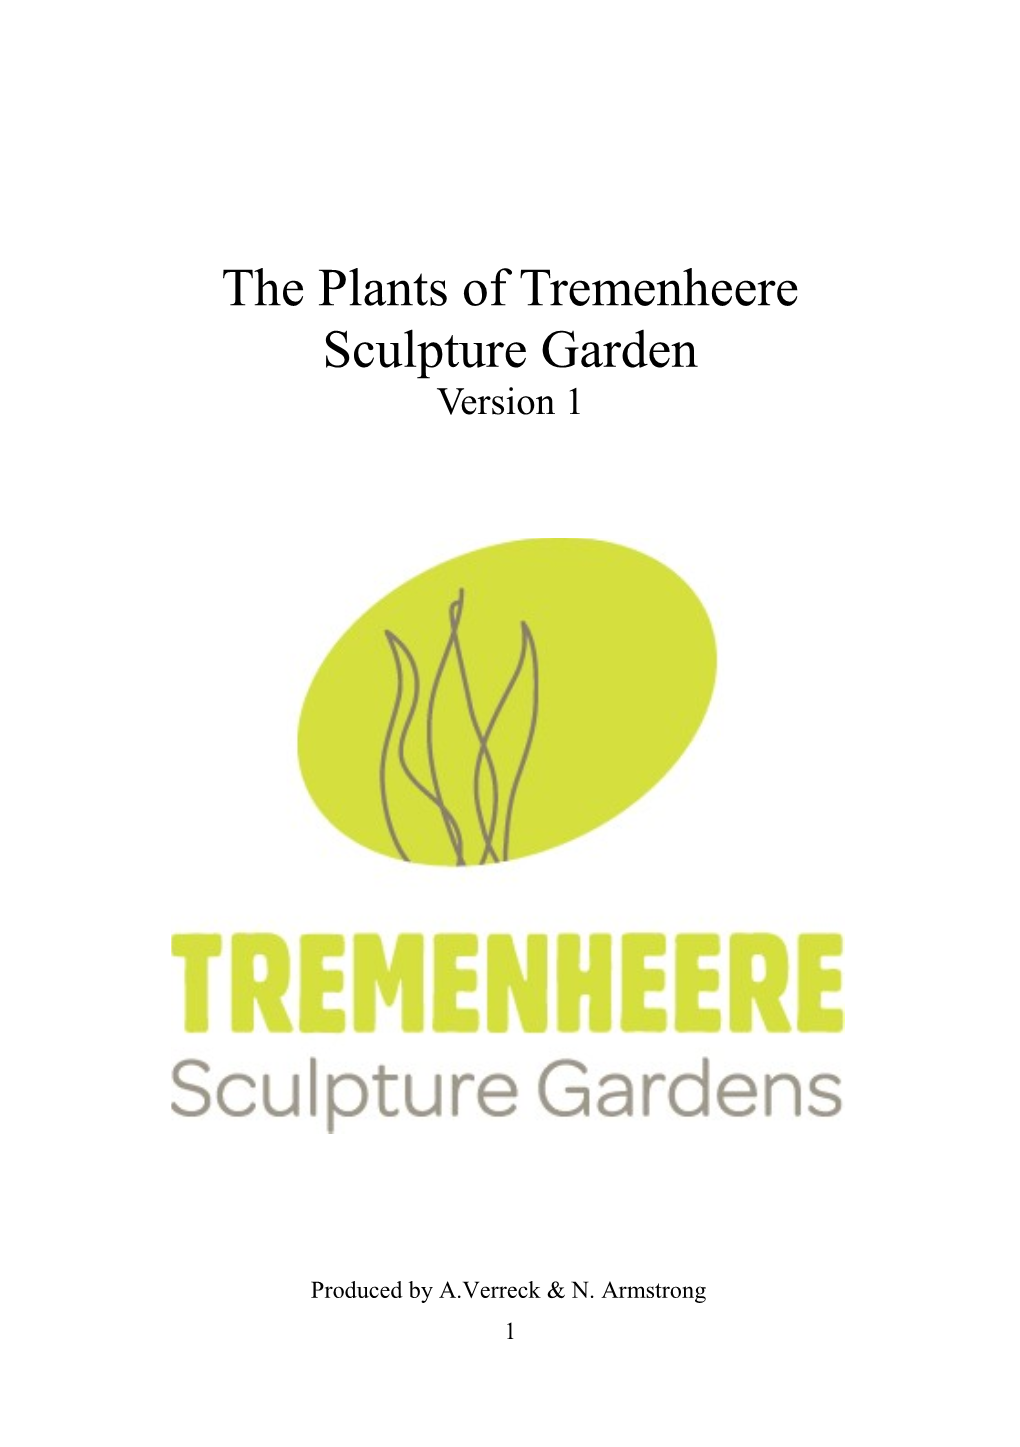 The Plants of Tremenheere Sculpture Garden Version 1